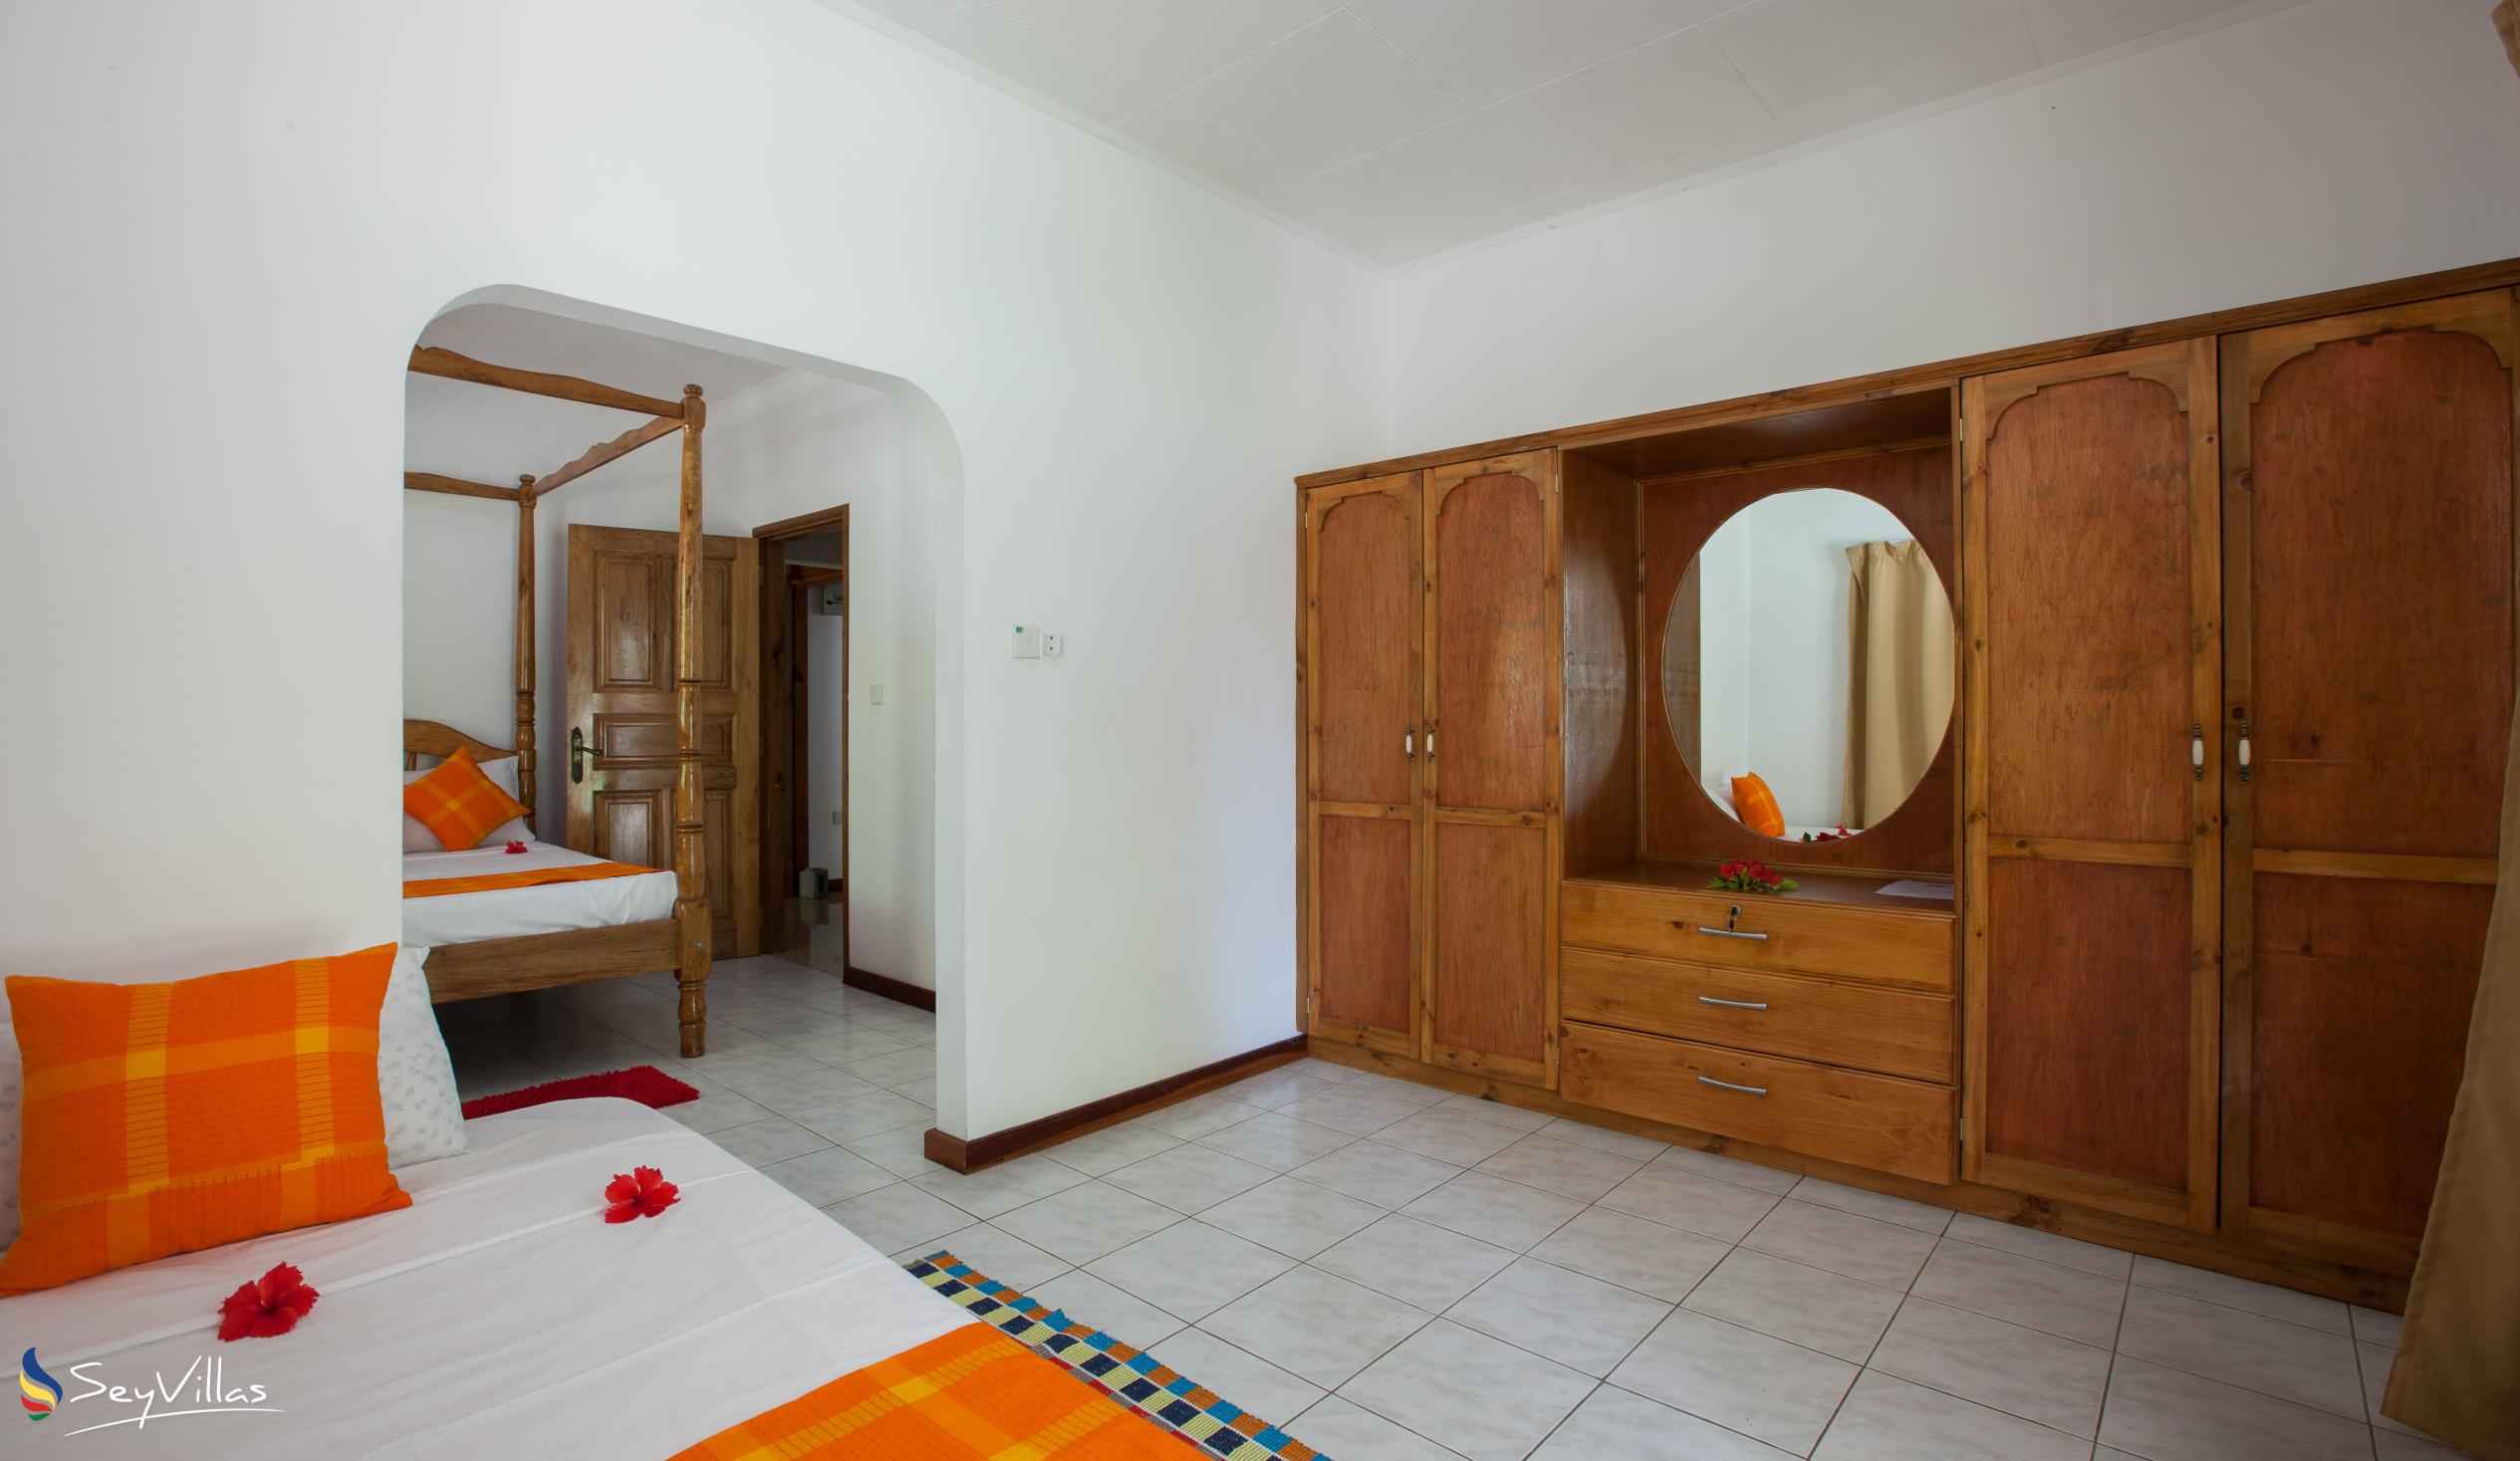 Foto 43: Villa Confort - Chambre familiale 1 - Praslin (Seychelles)